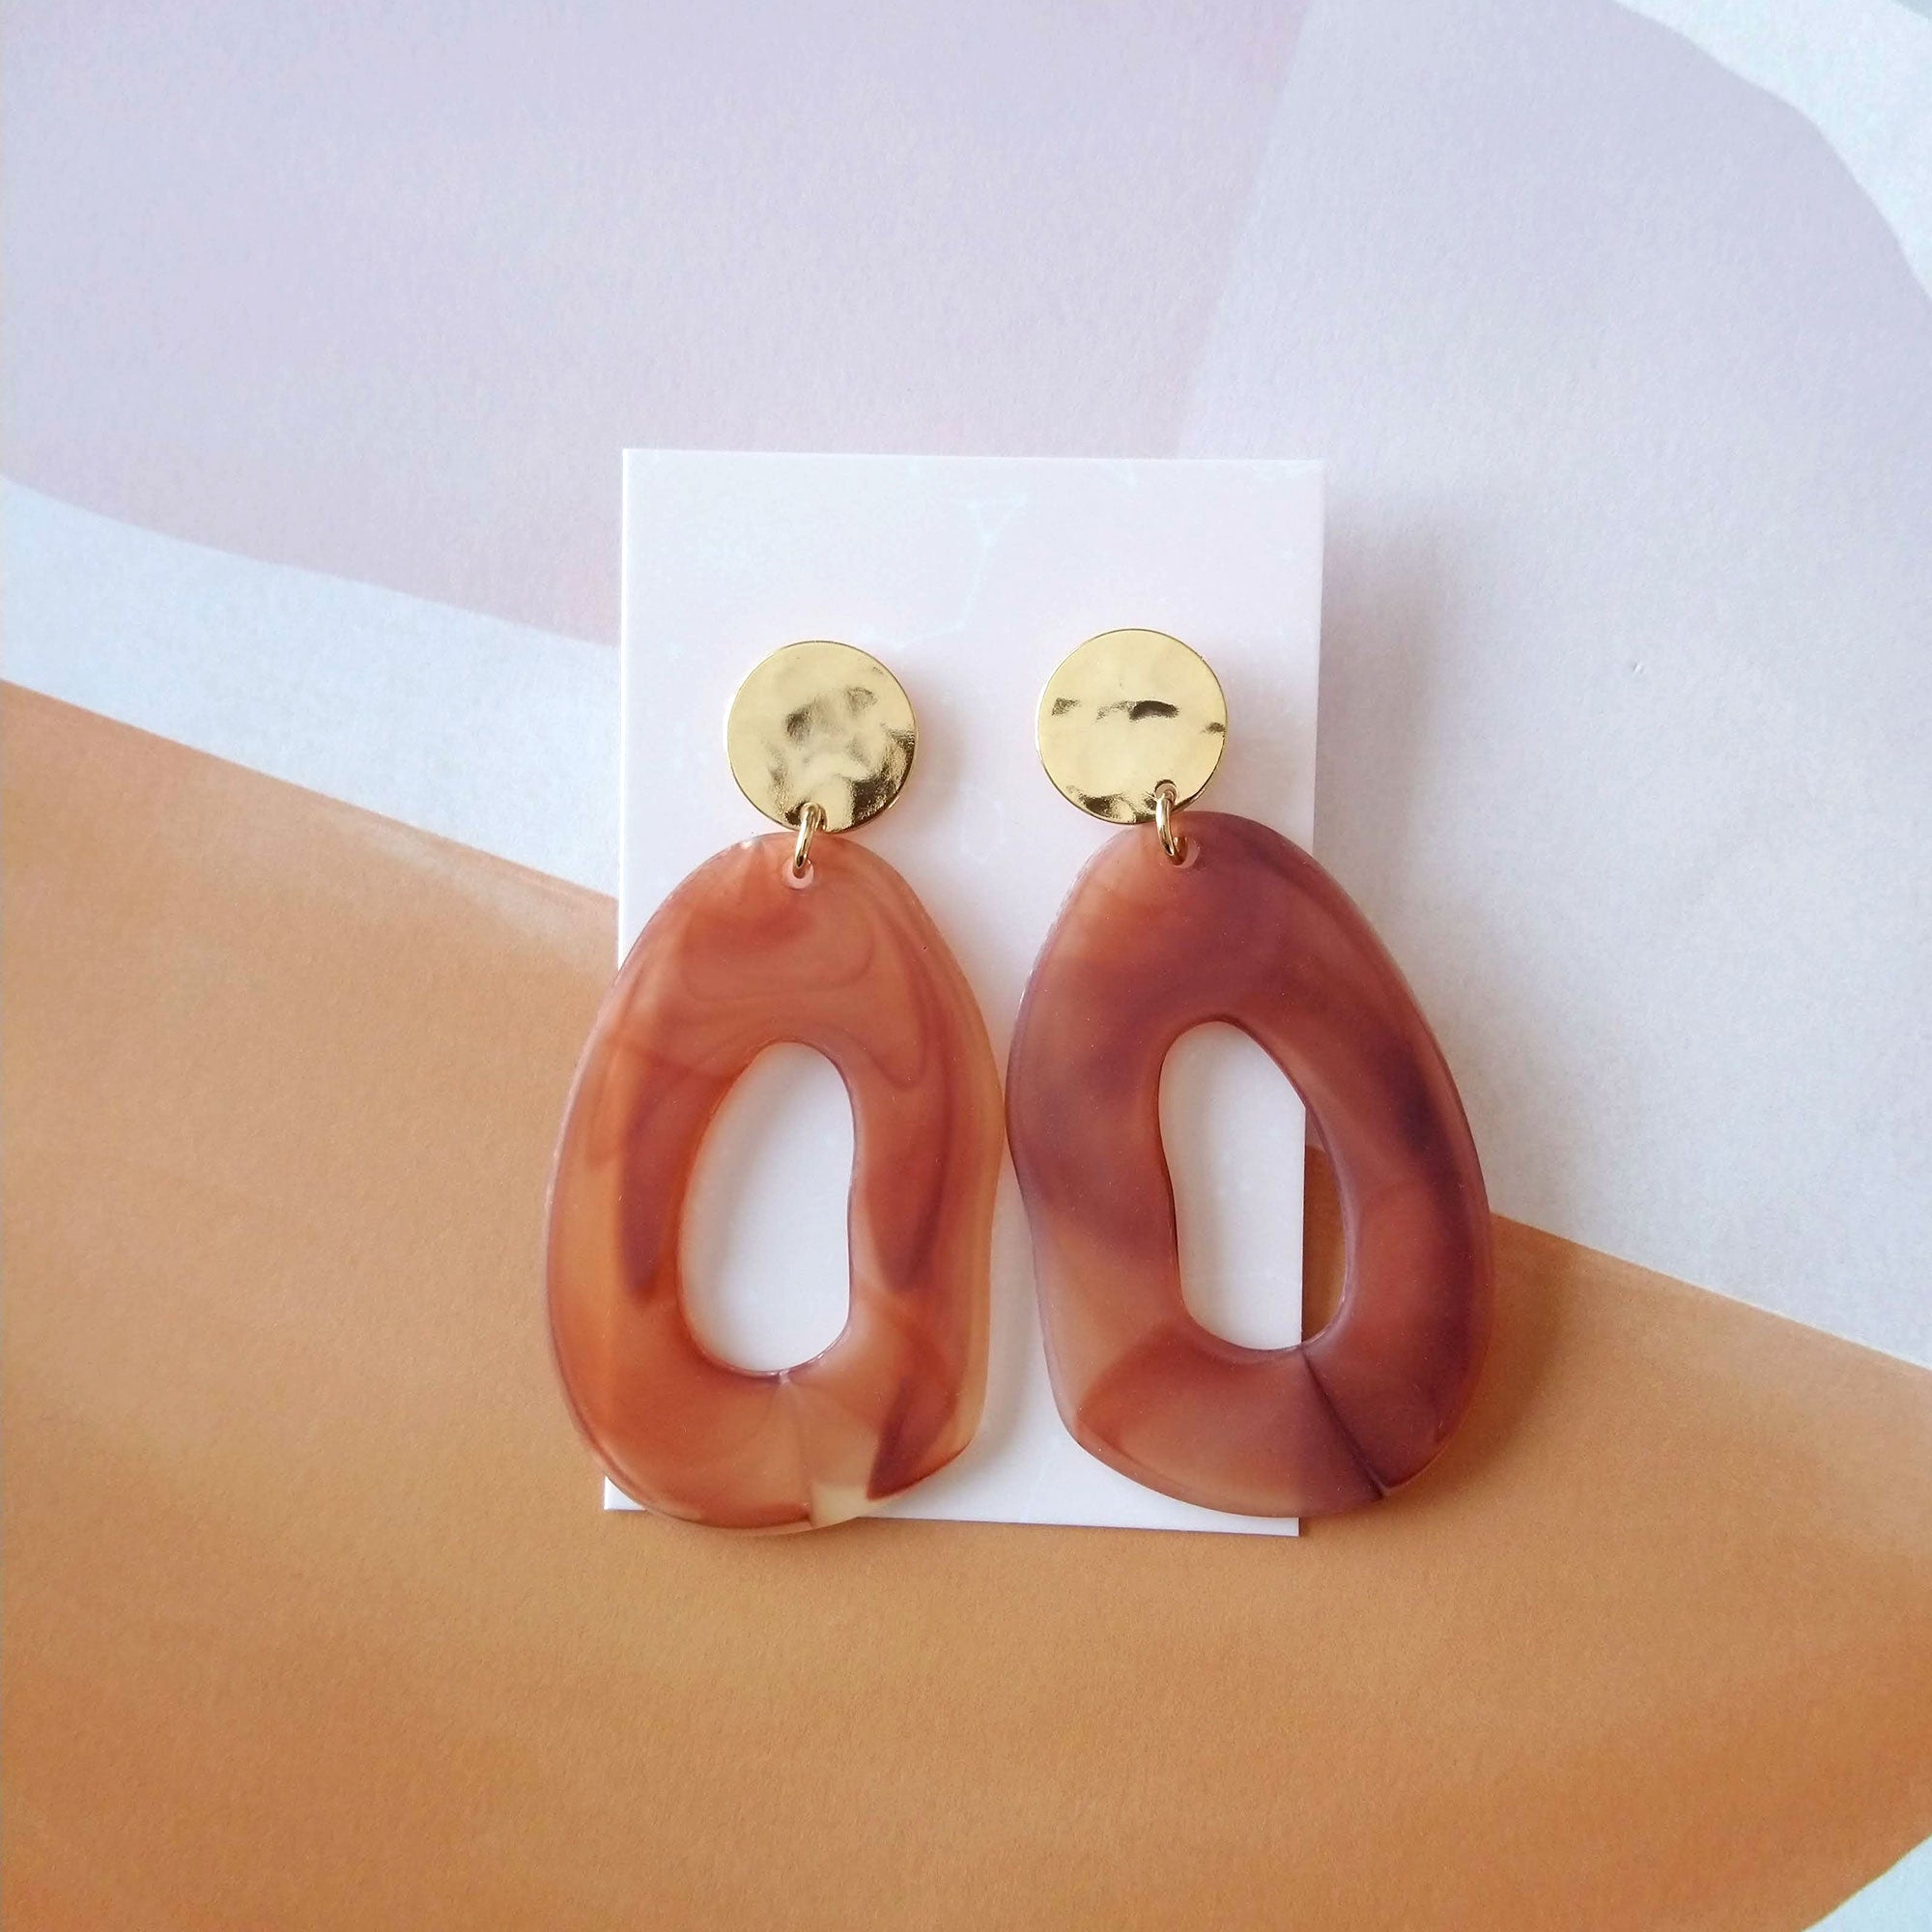 statement earrings acrylic hoops brown acetate